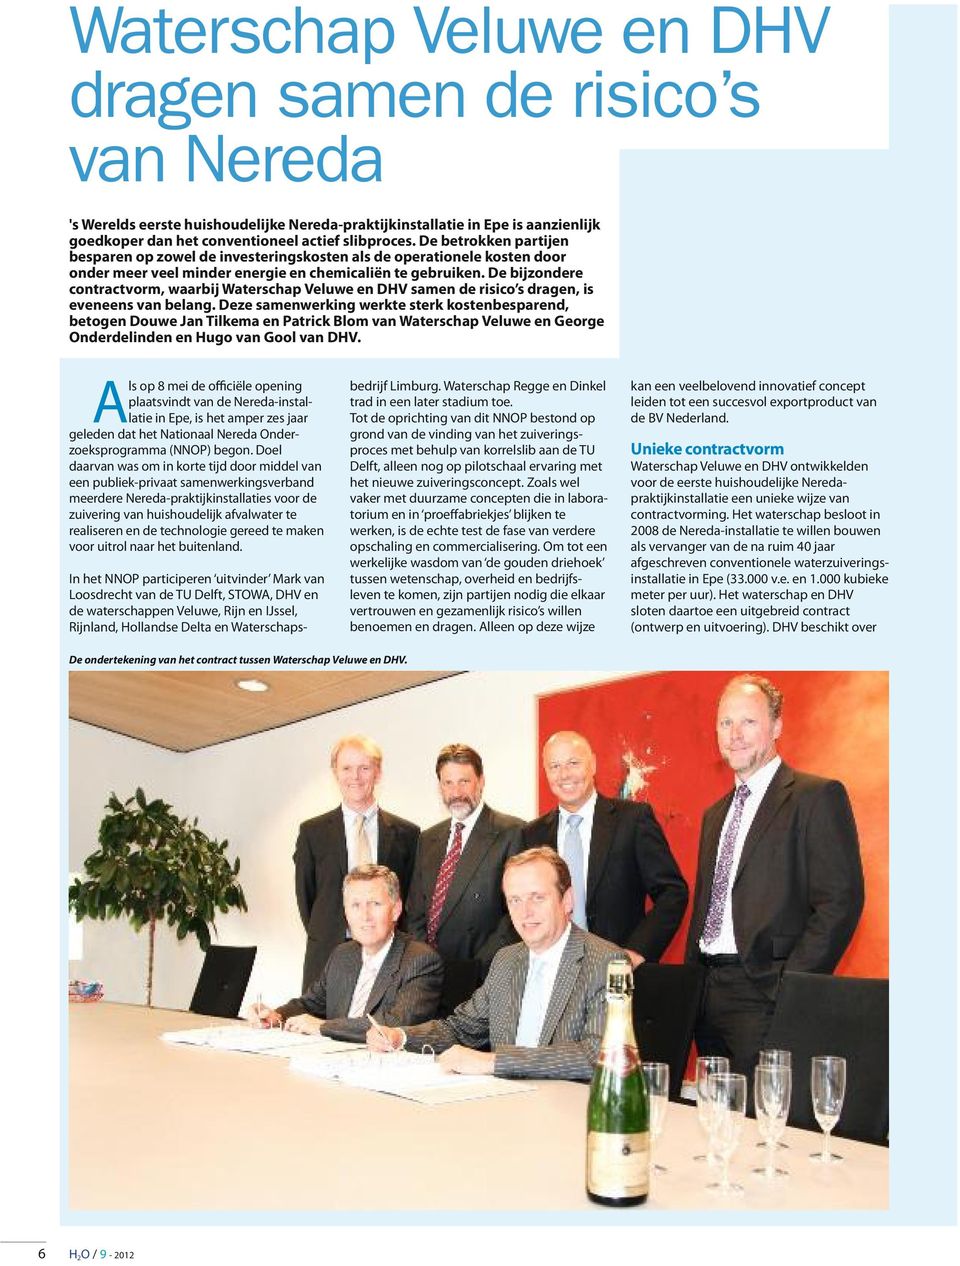 De bijzondere contractvorm, waarbij Waterschap Veluwe en DHV samen de risico s dragen, is eveneens van belang.